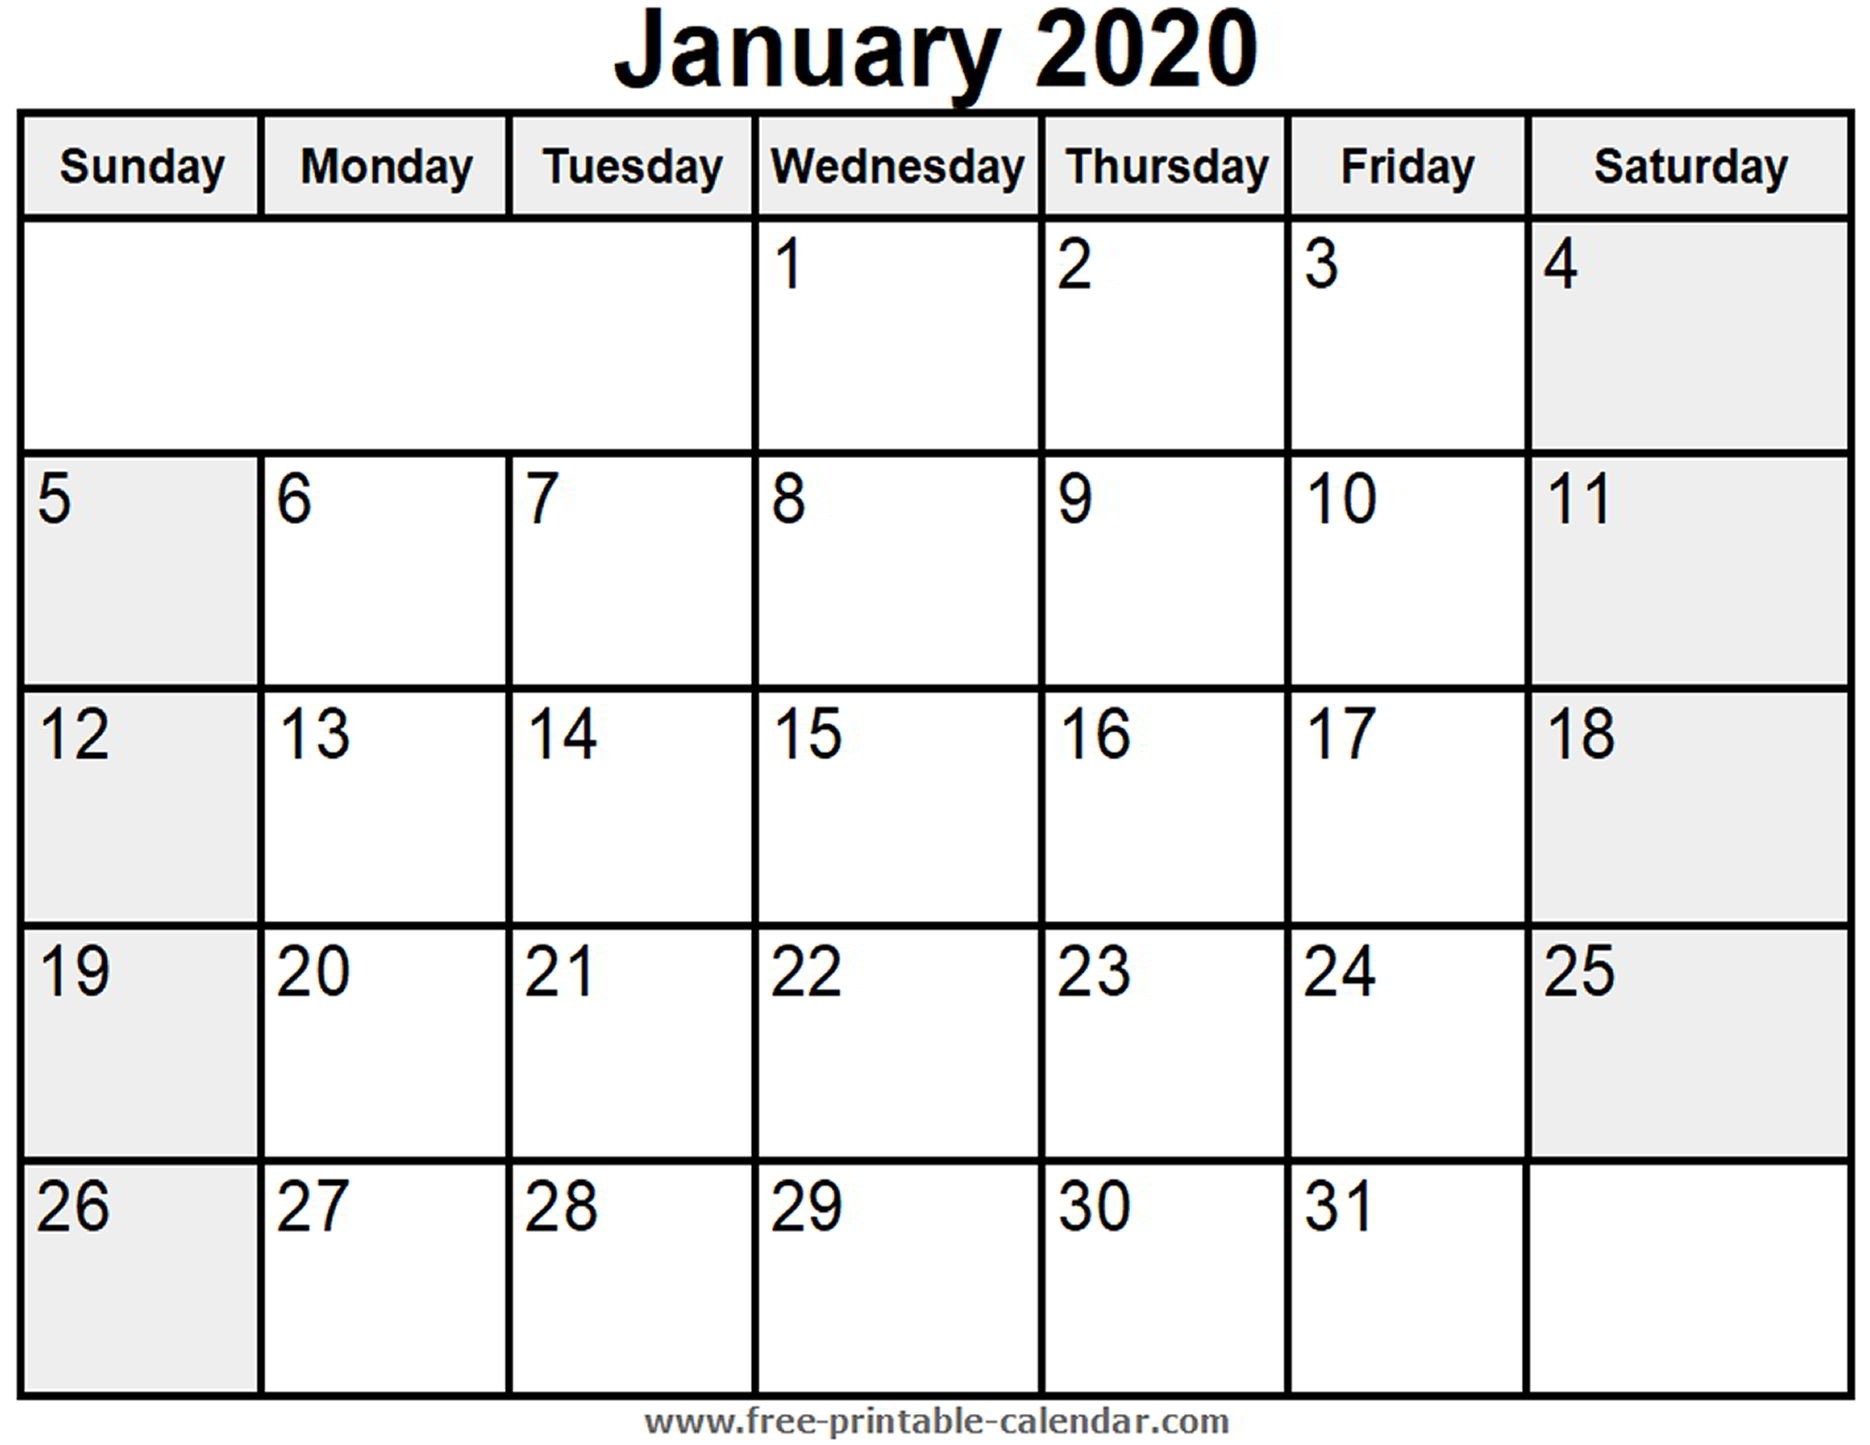 Printable January 2020 Calendar - Free-Printable-Calendar-January 2020 Calendar Uk